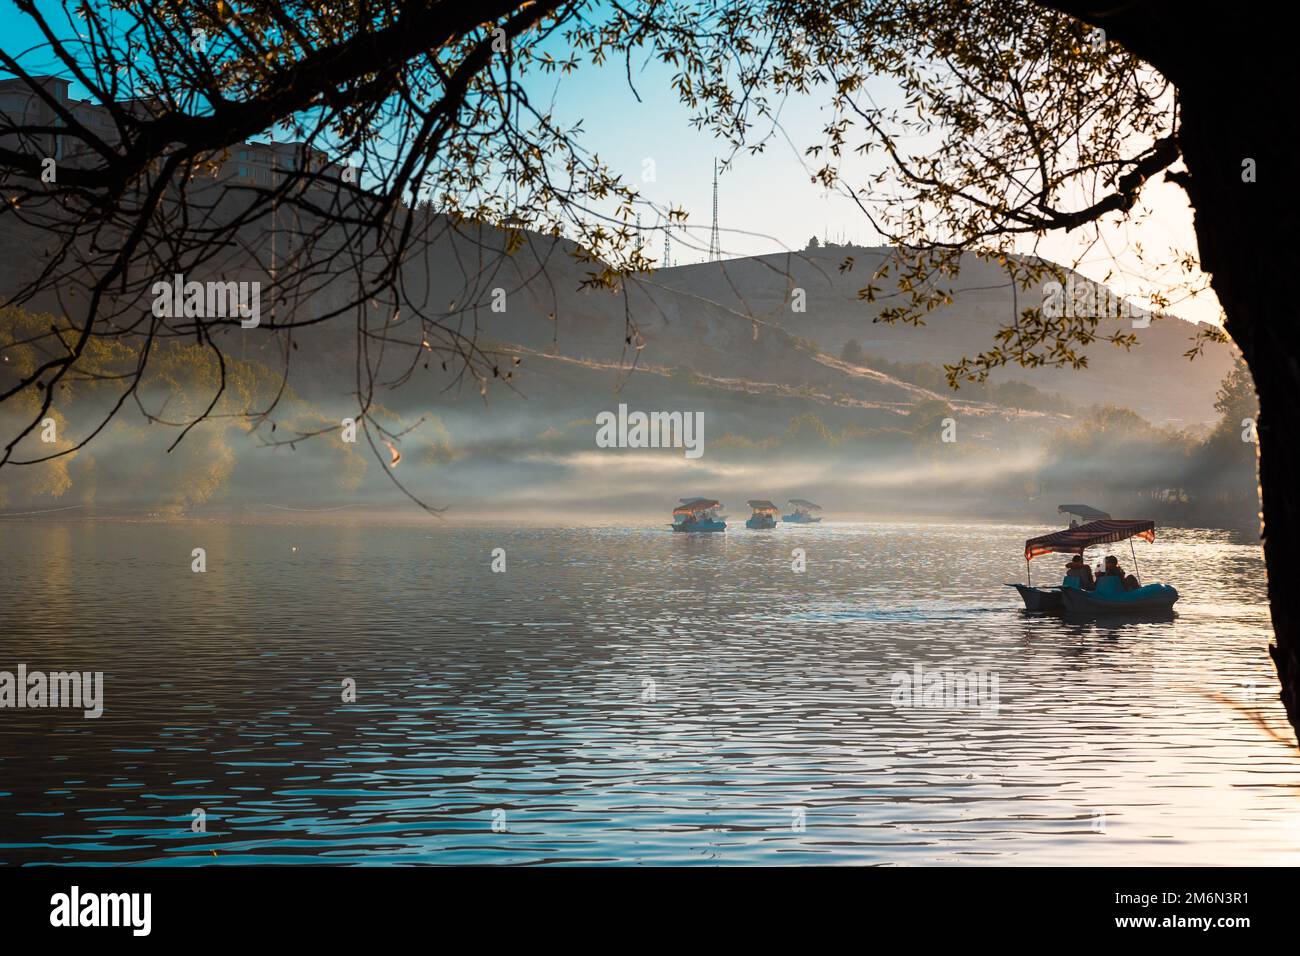 Tretboote auf dem See bei Sonnenuntergang. Konzeptfoto für Reise- oder Wochenendaktivitäten. Dunst oder Nebel auf dem See. Stockfoto